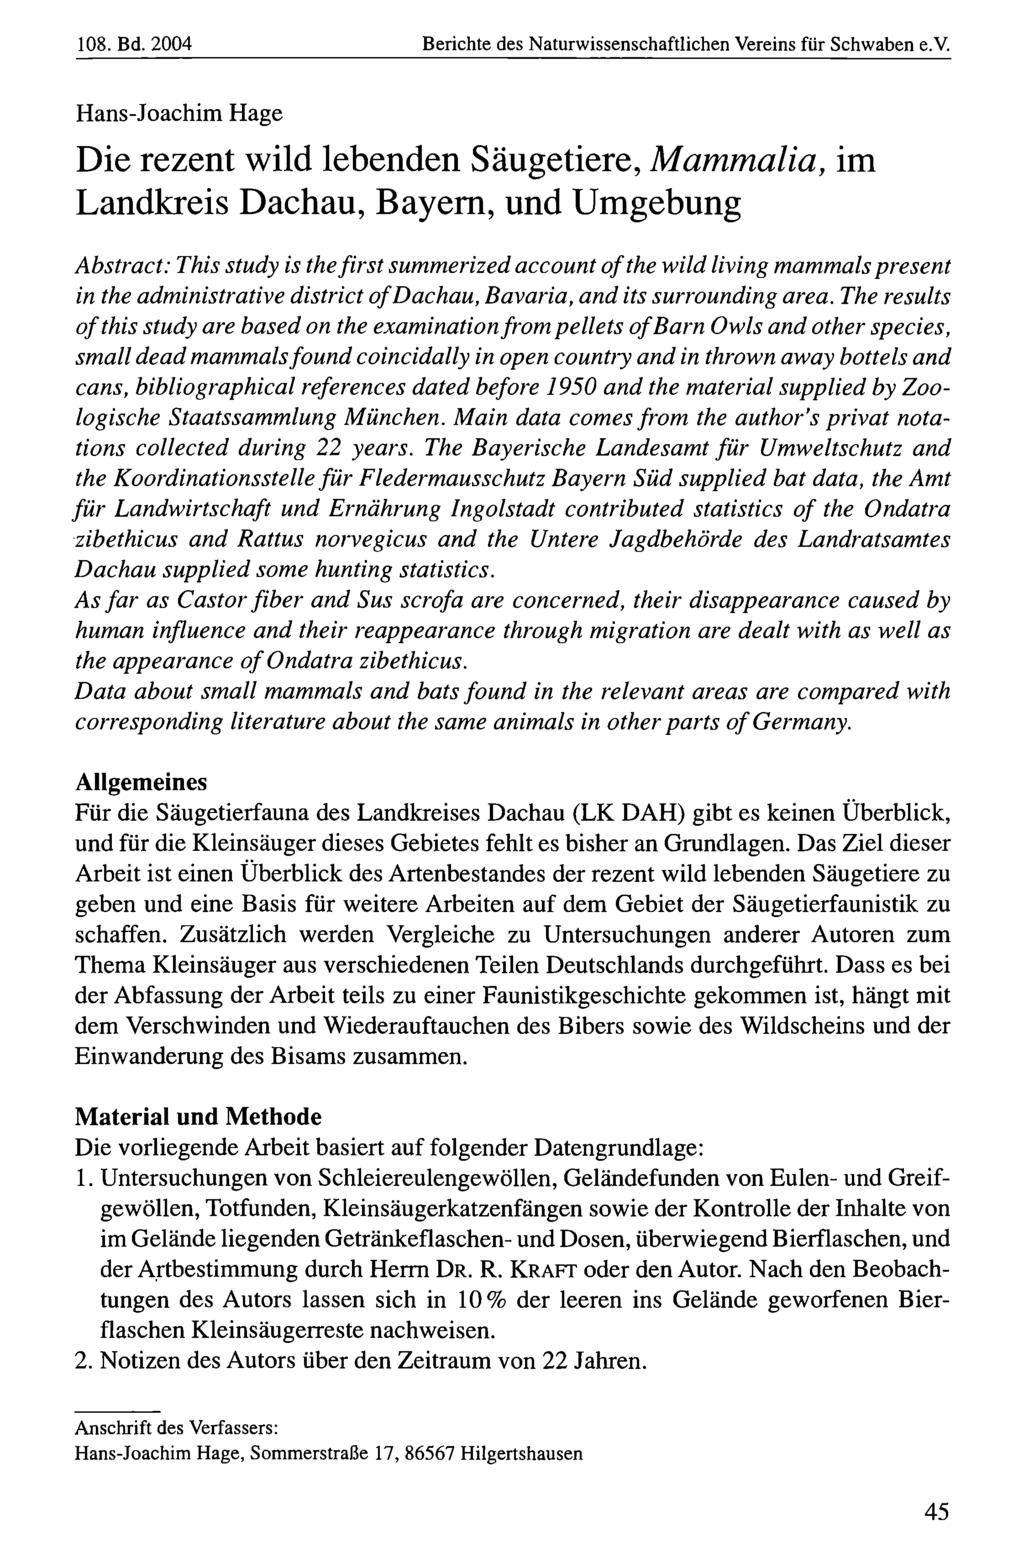 108. Bd. 2004 Naturwissenschaftlicher Verein Berichte für Schwaben, des Naturwissenschaftlichen download unter www.biologiezentrum.at Vereins für Schwaben e.v.